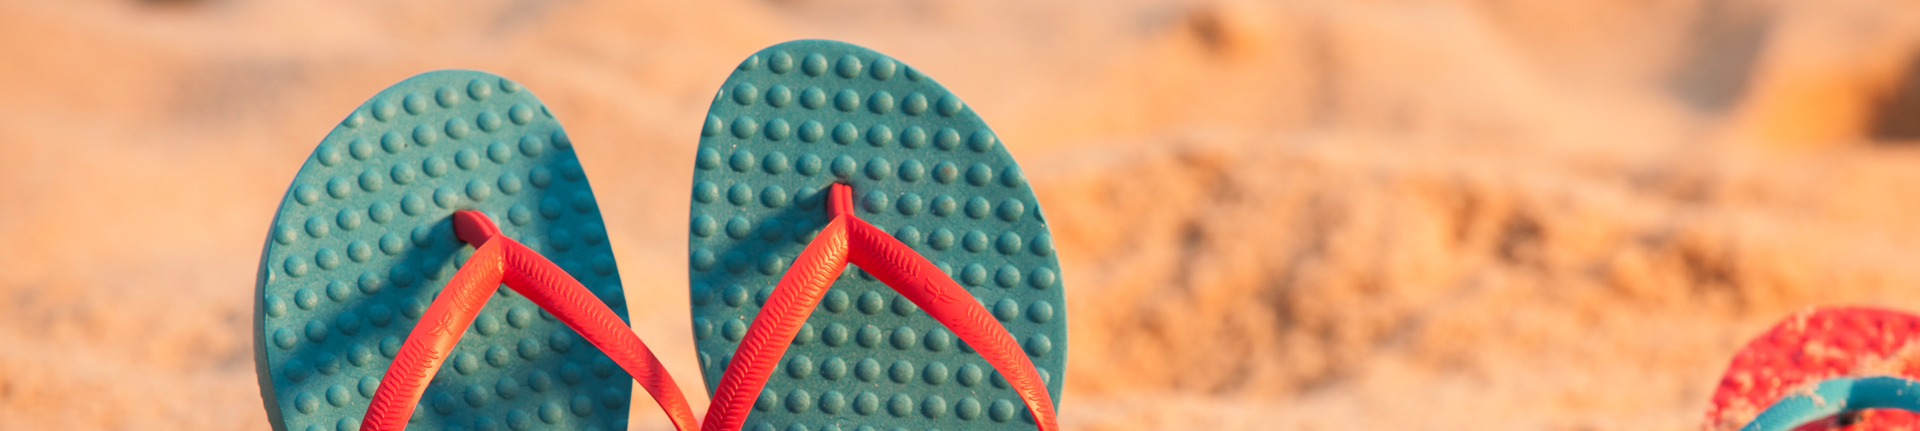 Sandálias “Flip flops”: um descanso na rotina